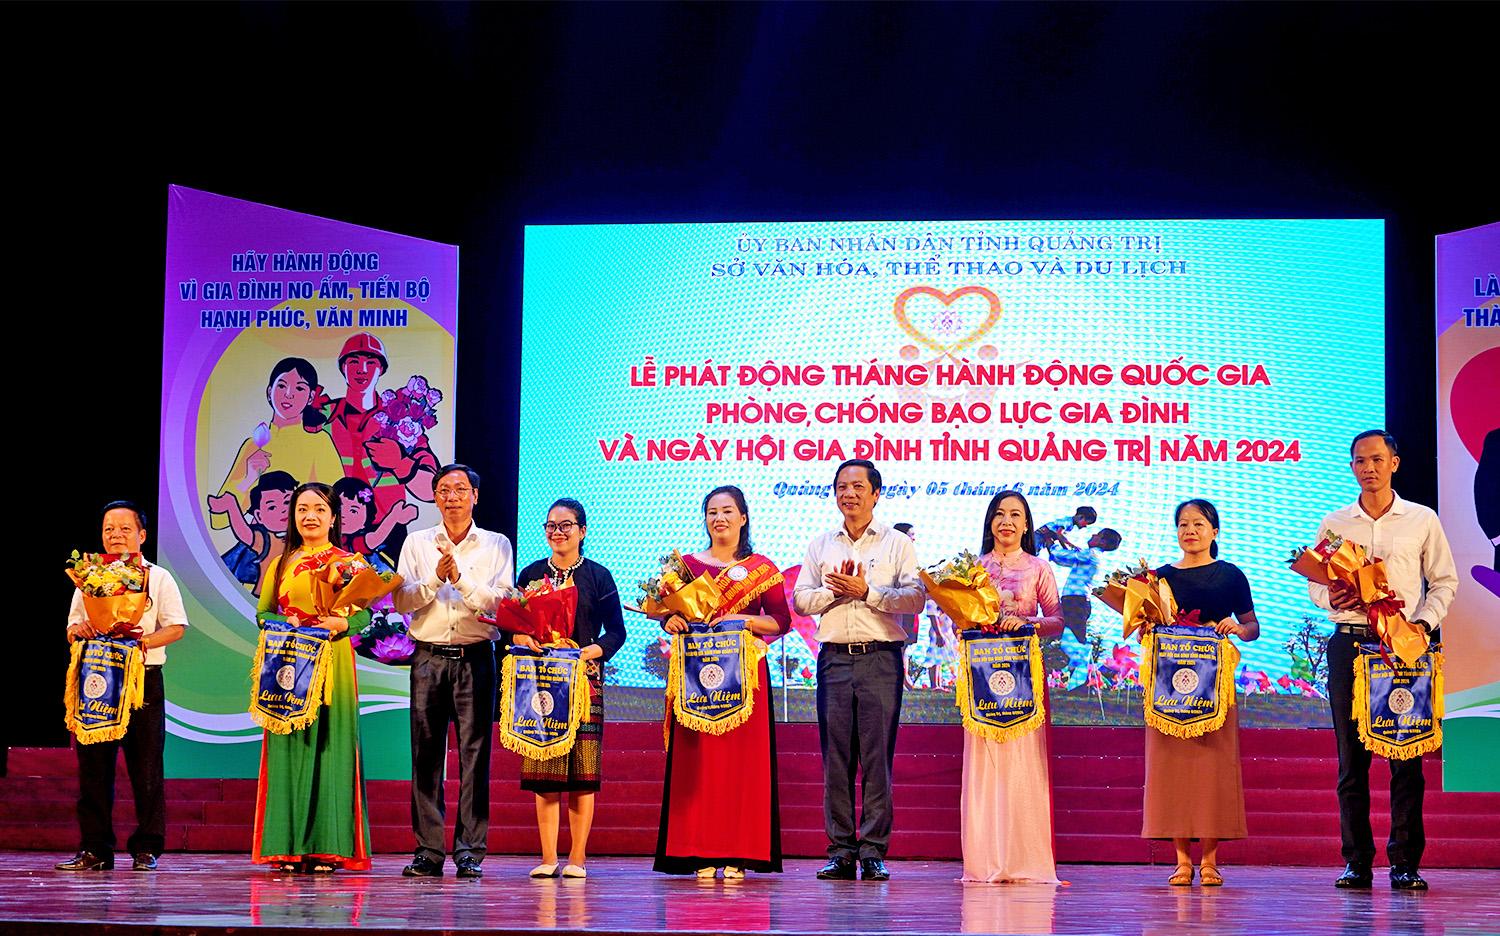 Đồng chí Hoàng Nam và lãnh đạo Sở VH-TT&DL tặng cờ lưu niệm cho các đơn vị tham gia Ngày hội Gia đình tỉnh Quảng Trị năm 2024.